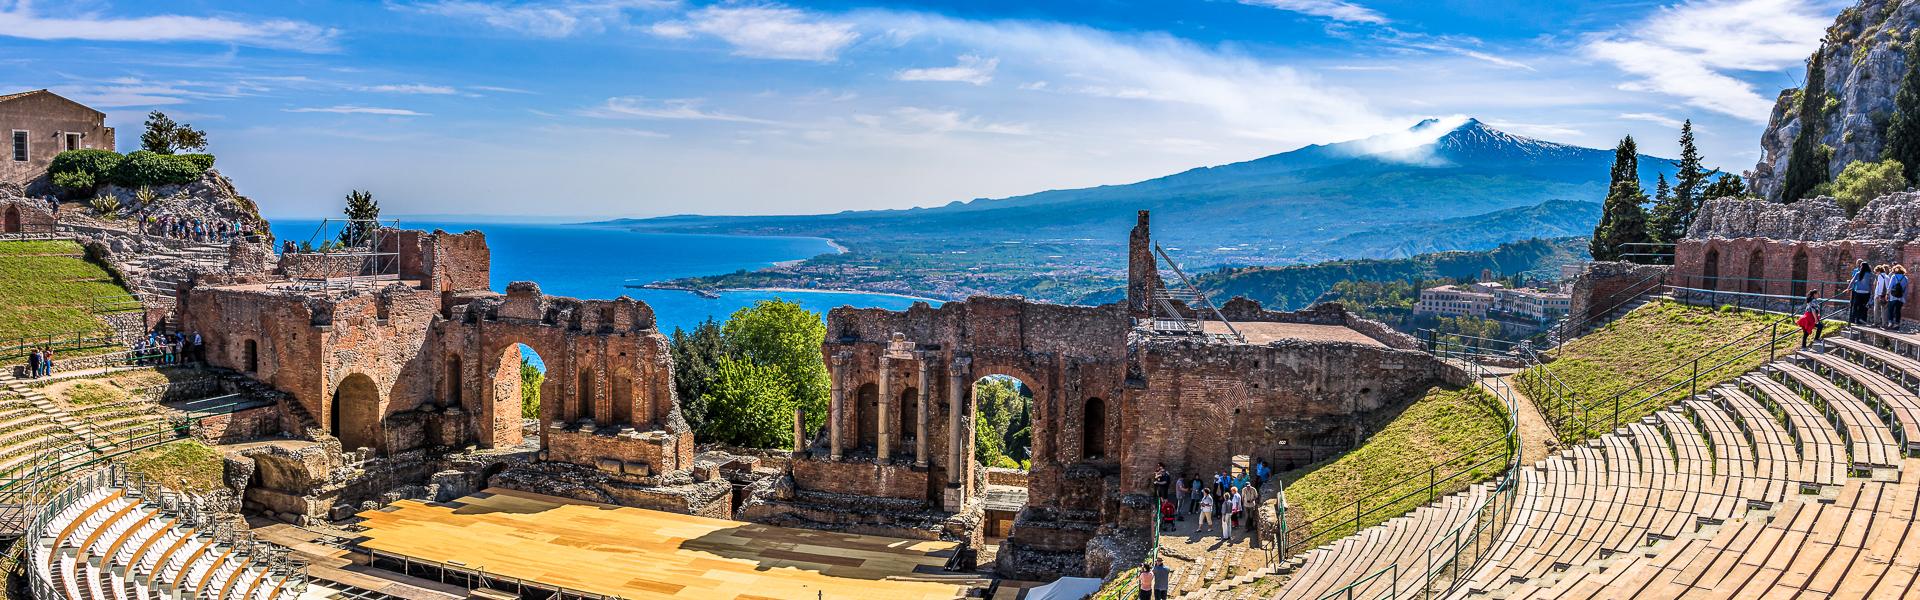 Panoramablick auf das antike Theater in Taormina |  VanSky, iStockphoto.com / Chamleon